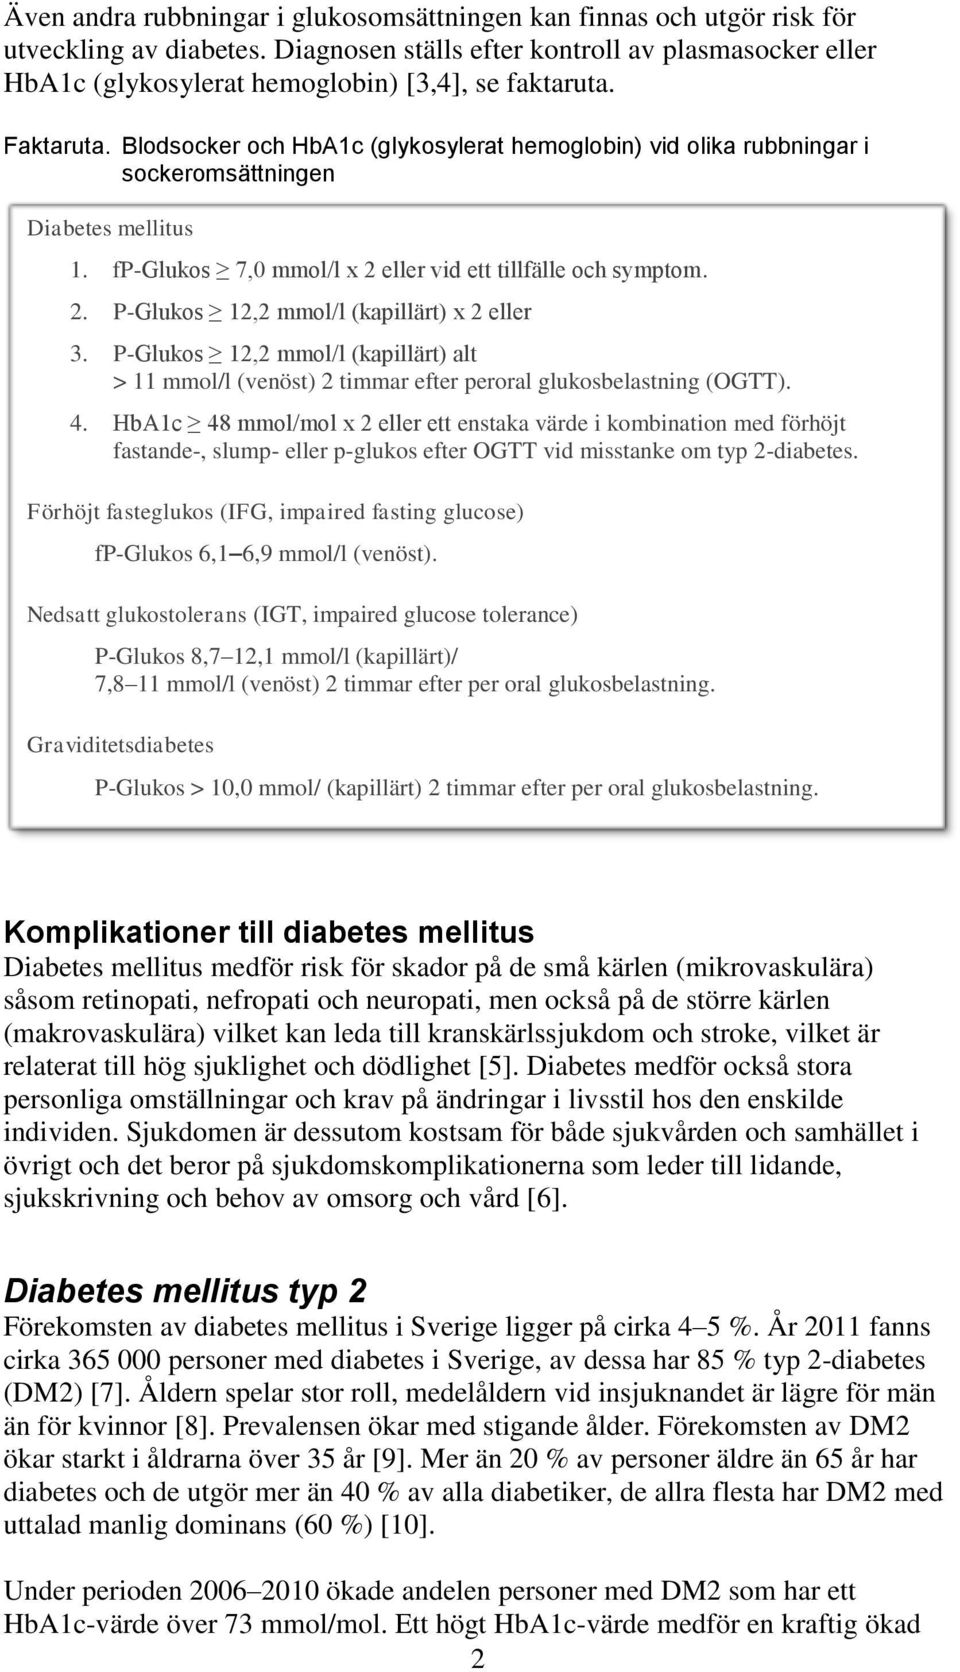 Blodsocker och HbA1c (glykosylerat hemoglobin) vid olika rubbningar i sockeromsättningen Diabetes mellitus 1. fp-glukos 7,0 mmol/l x 2 eller vid ett tillfälle och symptom. 2. P-Glukos 12,2 mmol/l (kapillärt) x 2 eller 3.